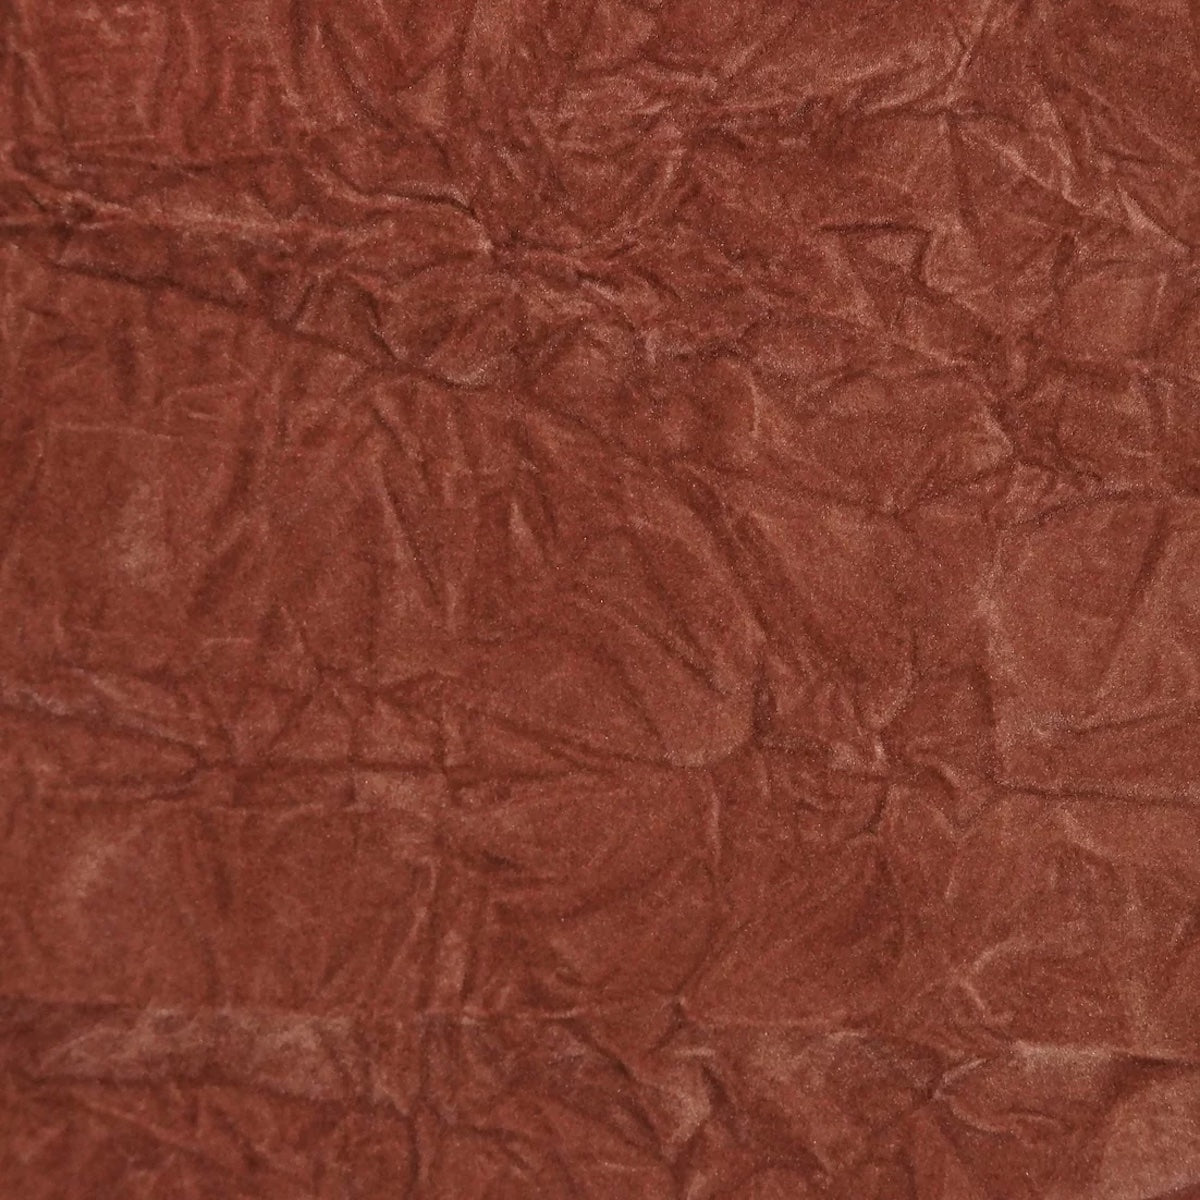 Rust Orange Crushed Velvet Flocking Fabric - Fashion Fabrics LLC